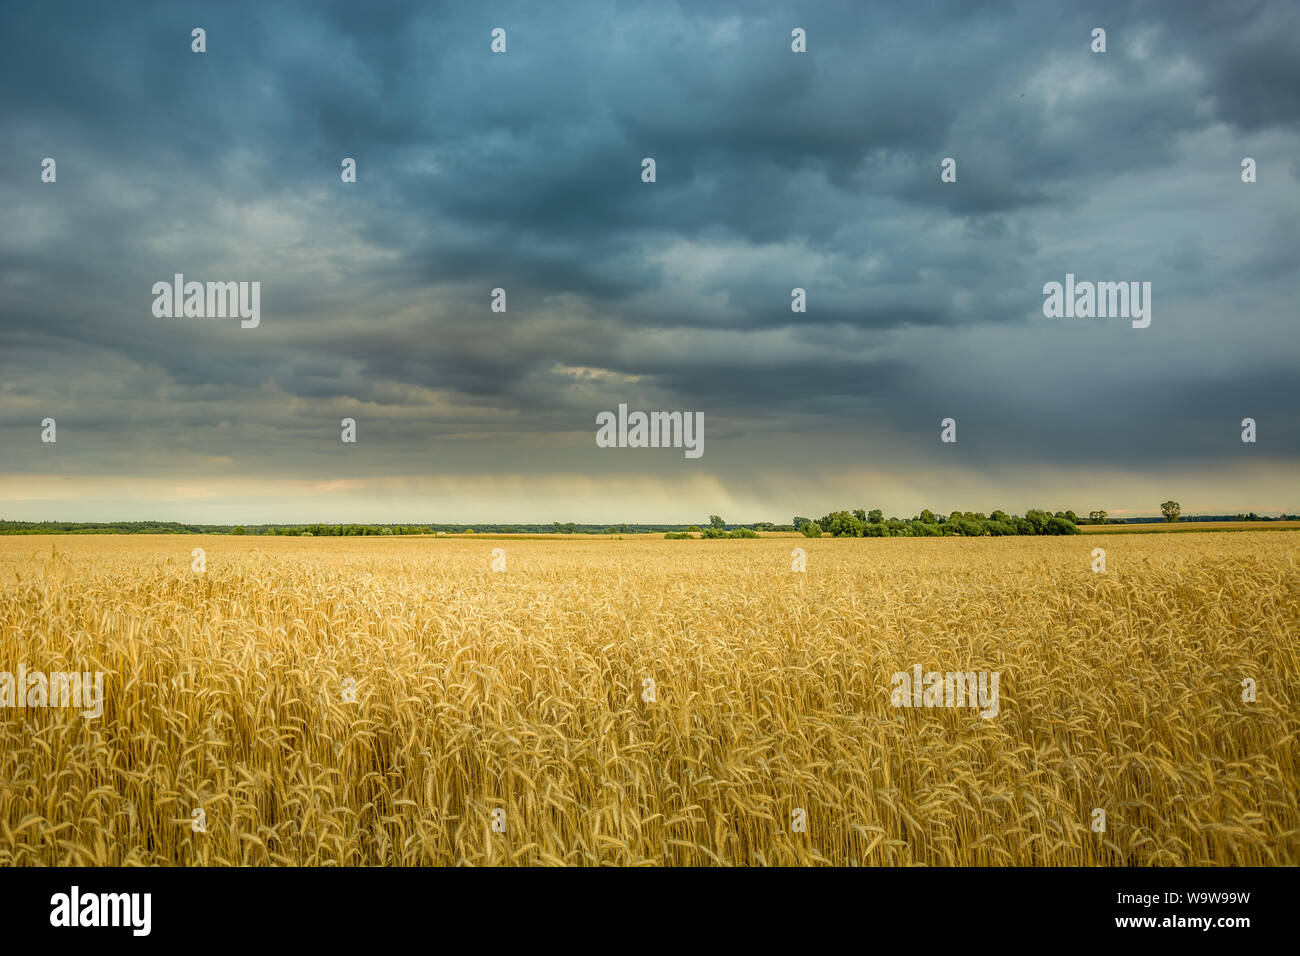 Piovosa scure nuvole nel cielo al di sopra di un campo di grano. Czulczyce, Polonia Foto Stock